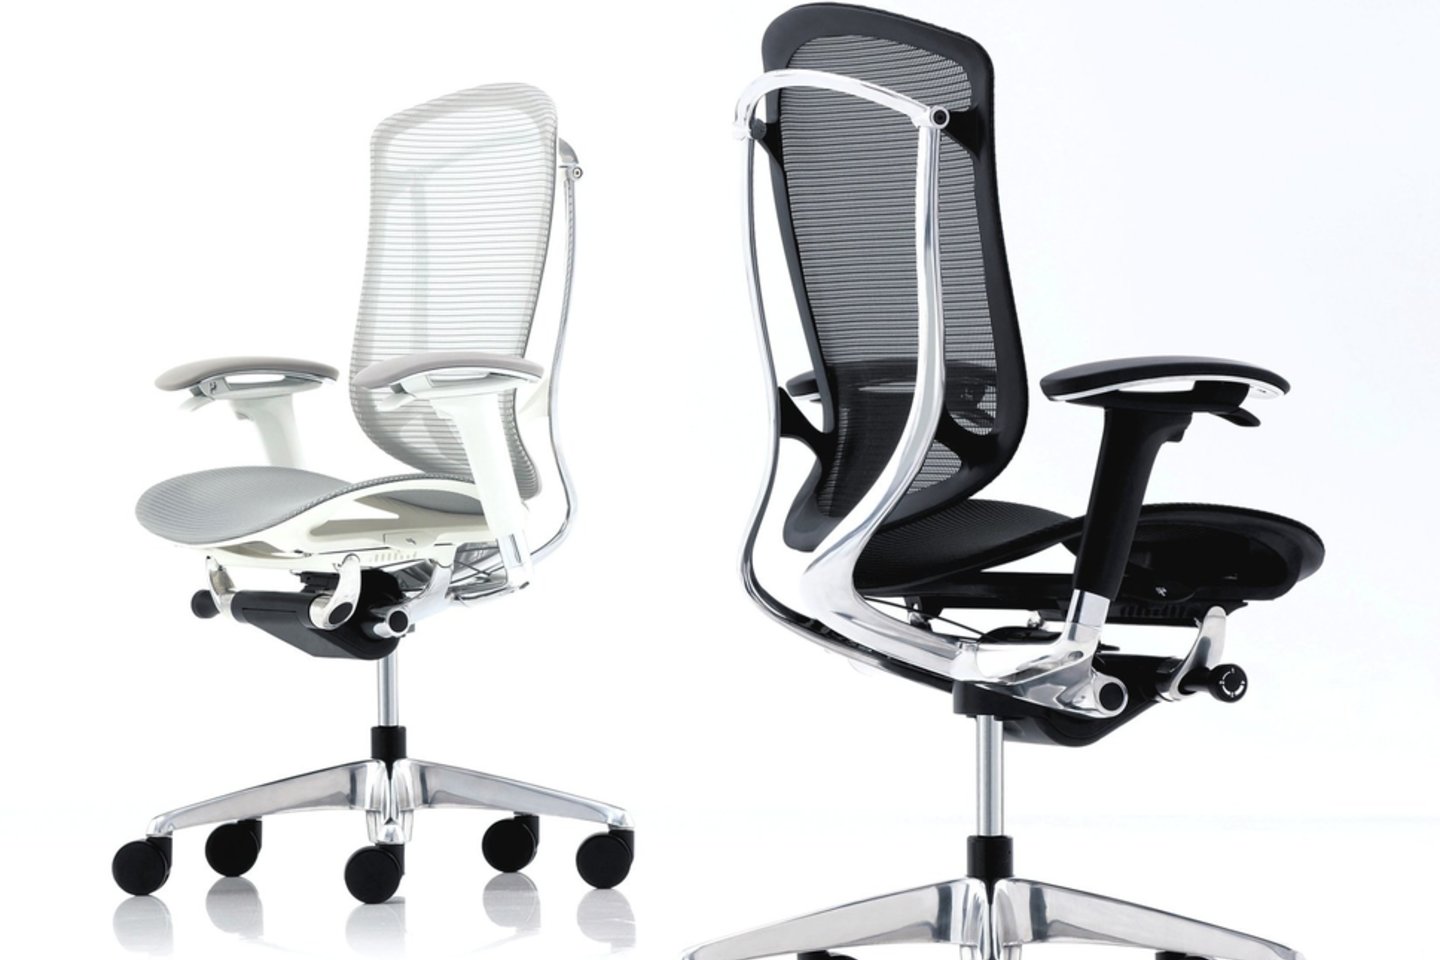 Keturženkle suma įvertintas biuro kėdes „Contessa“ Japonijos biuro baldų kompanija „Okamura Corporation“ pristatė dar 2002-aisiais, o sulaukus pasaulinio pripažinimo sukurta ir naujausia jos versija.